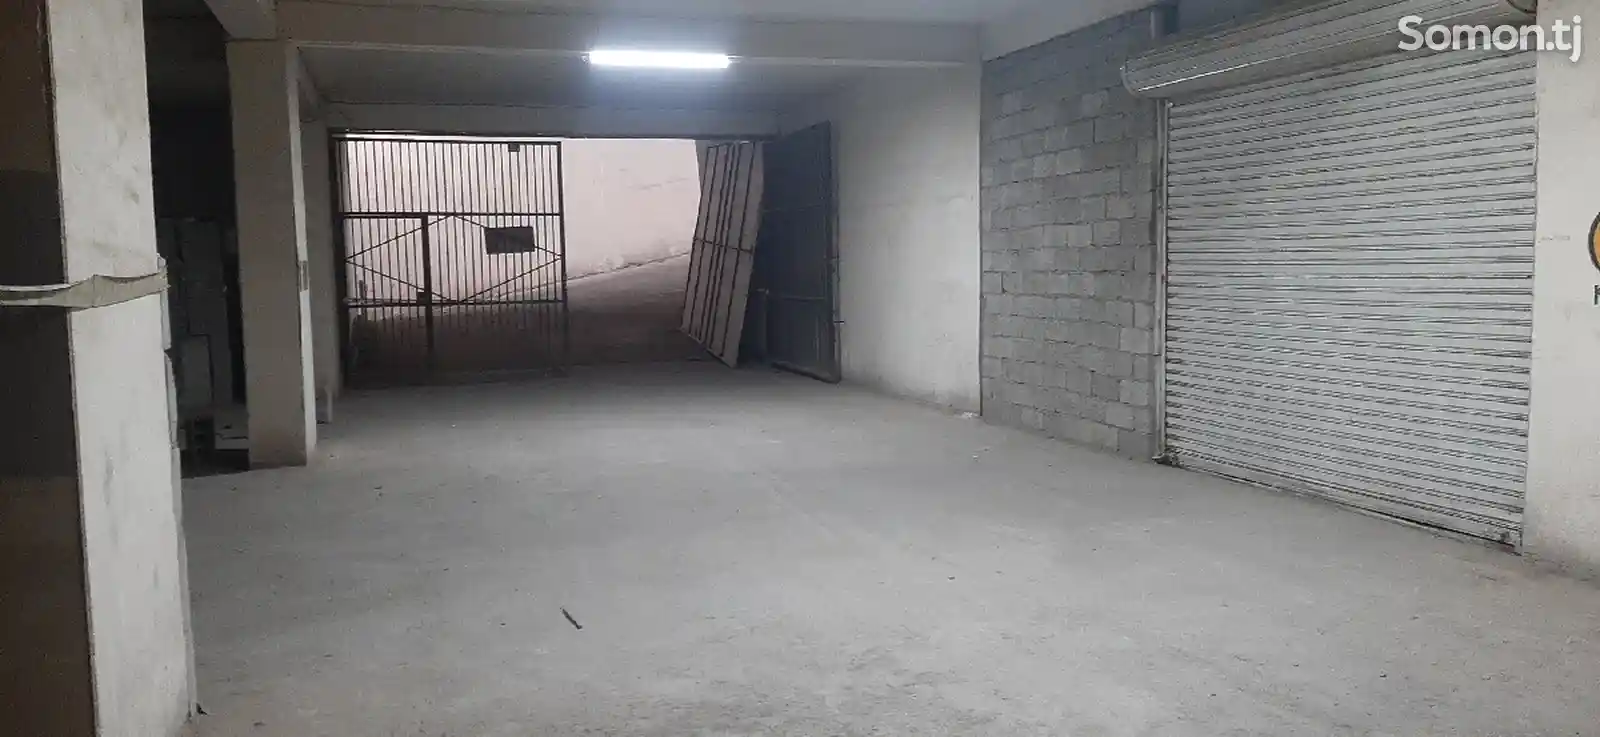 Помещение под склад, 500м², Корвон-2